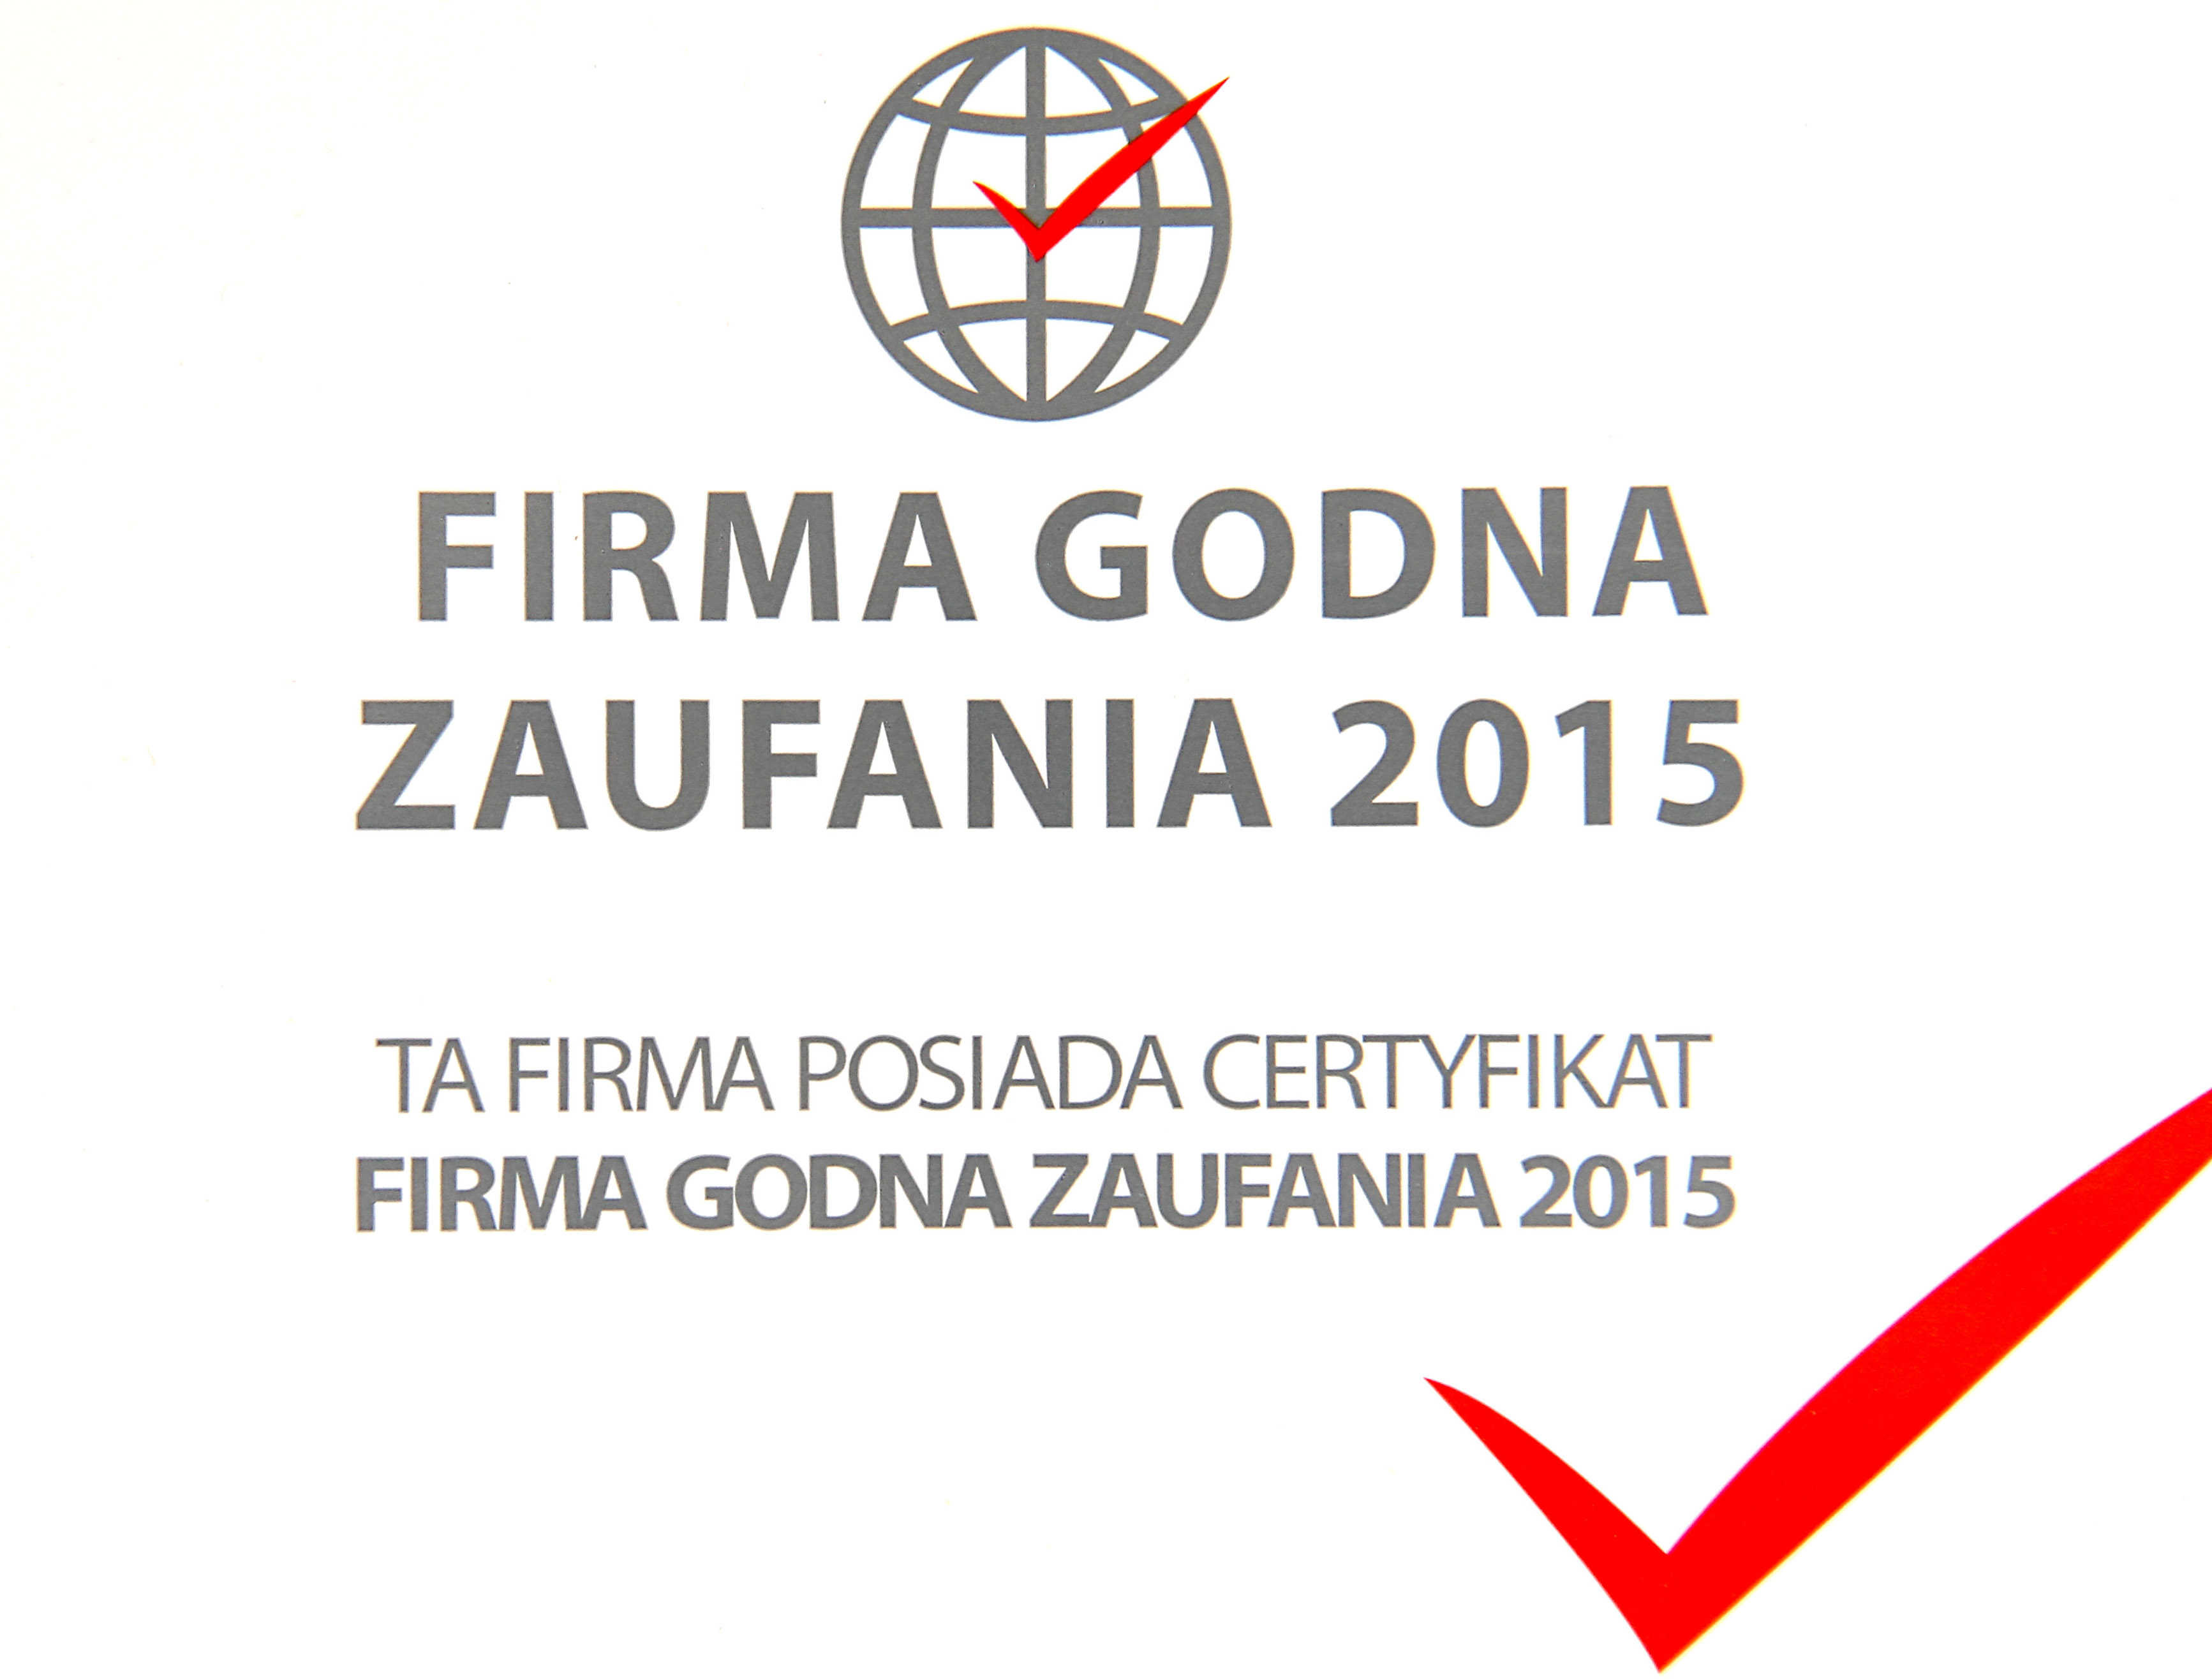 Firma_godna_zaufania_logo